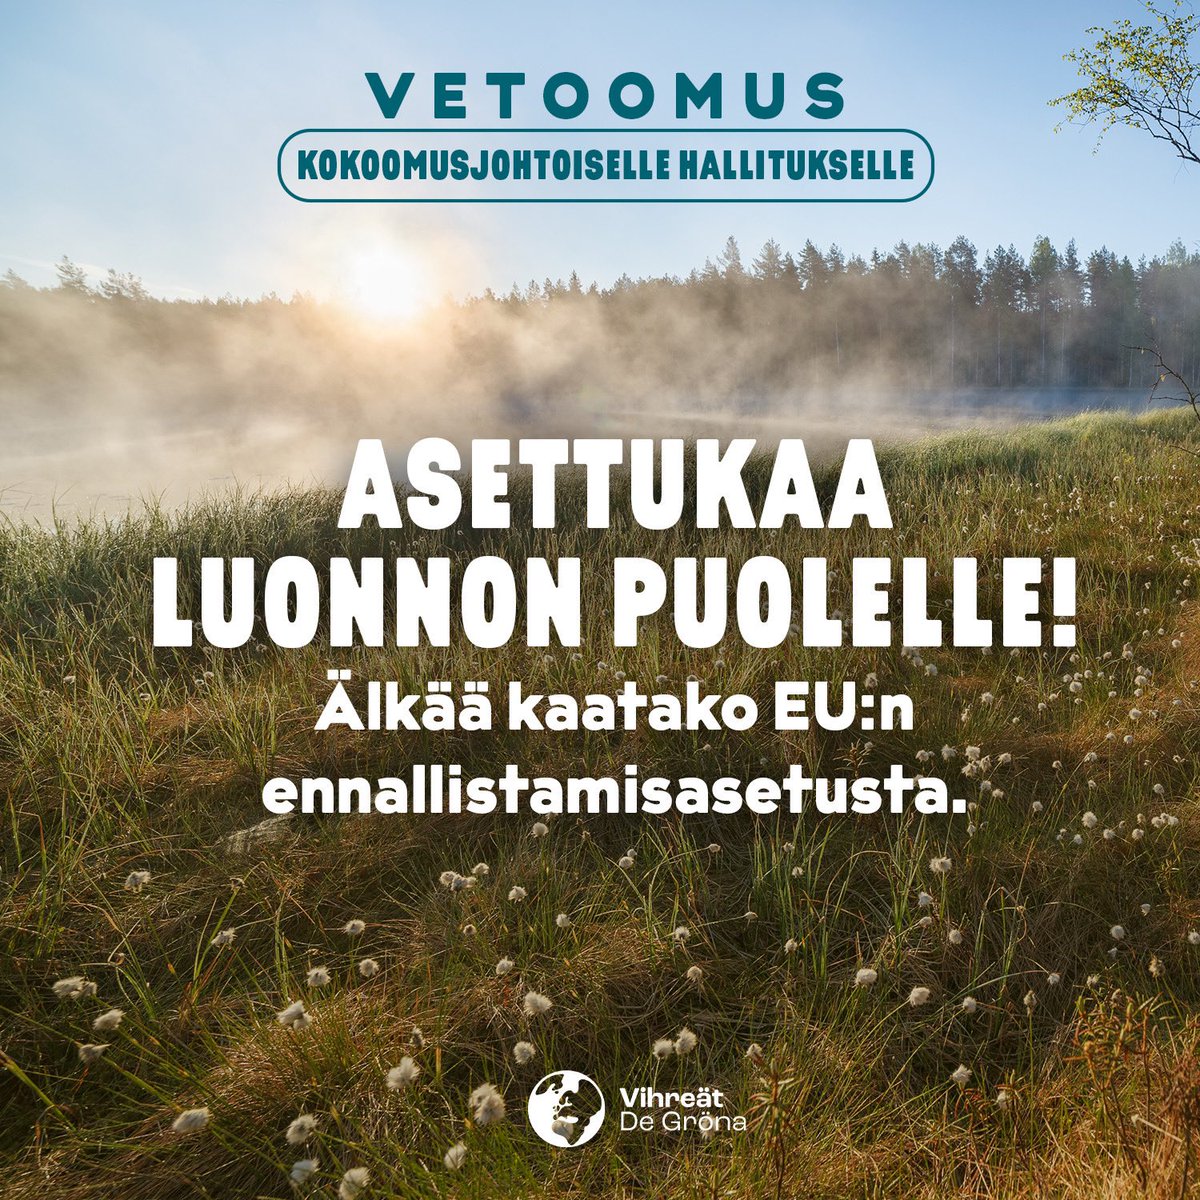 Ennallistamisasetus varmistaisi jokaisessa EU-maassa työn luonnon elinvoimaisuuden lisäämiseksi, luontokadon pysäyttämiseksi ja luonnon monimuotoisuuden vahvistamiseksi. Aikooko Suomi todella kaataa sen? Tätäkö on @kokoomus luontopolitiikka? @KaiMykkanen @PetteriOrpo @saarasofia